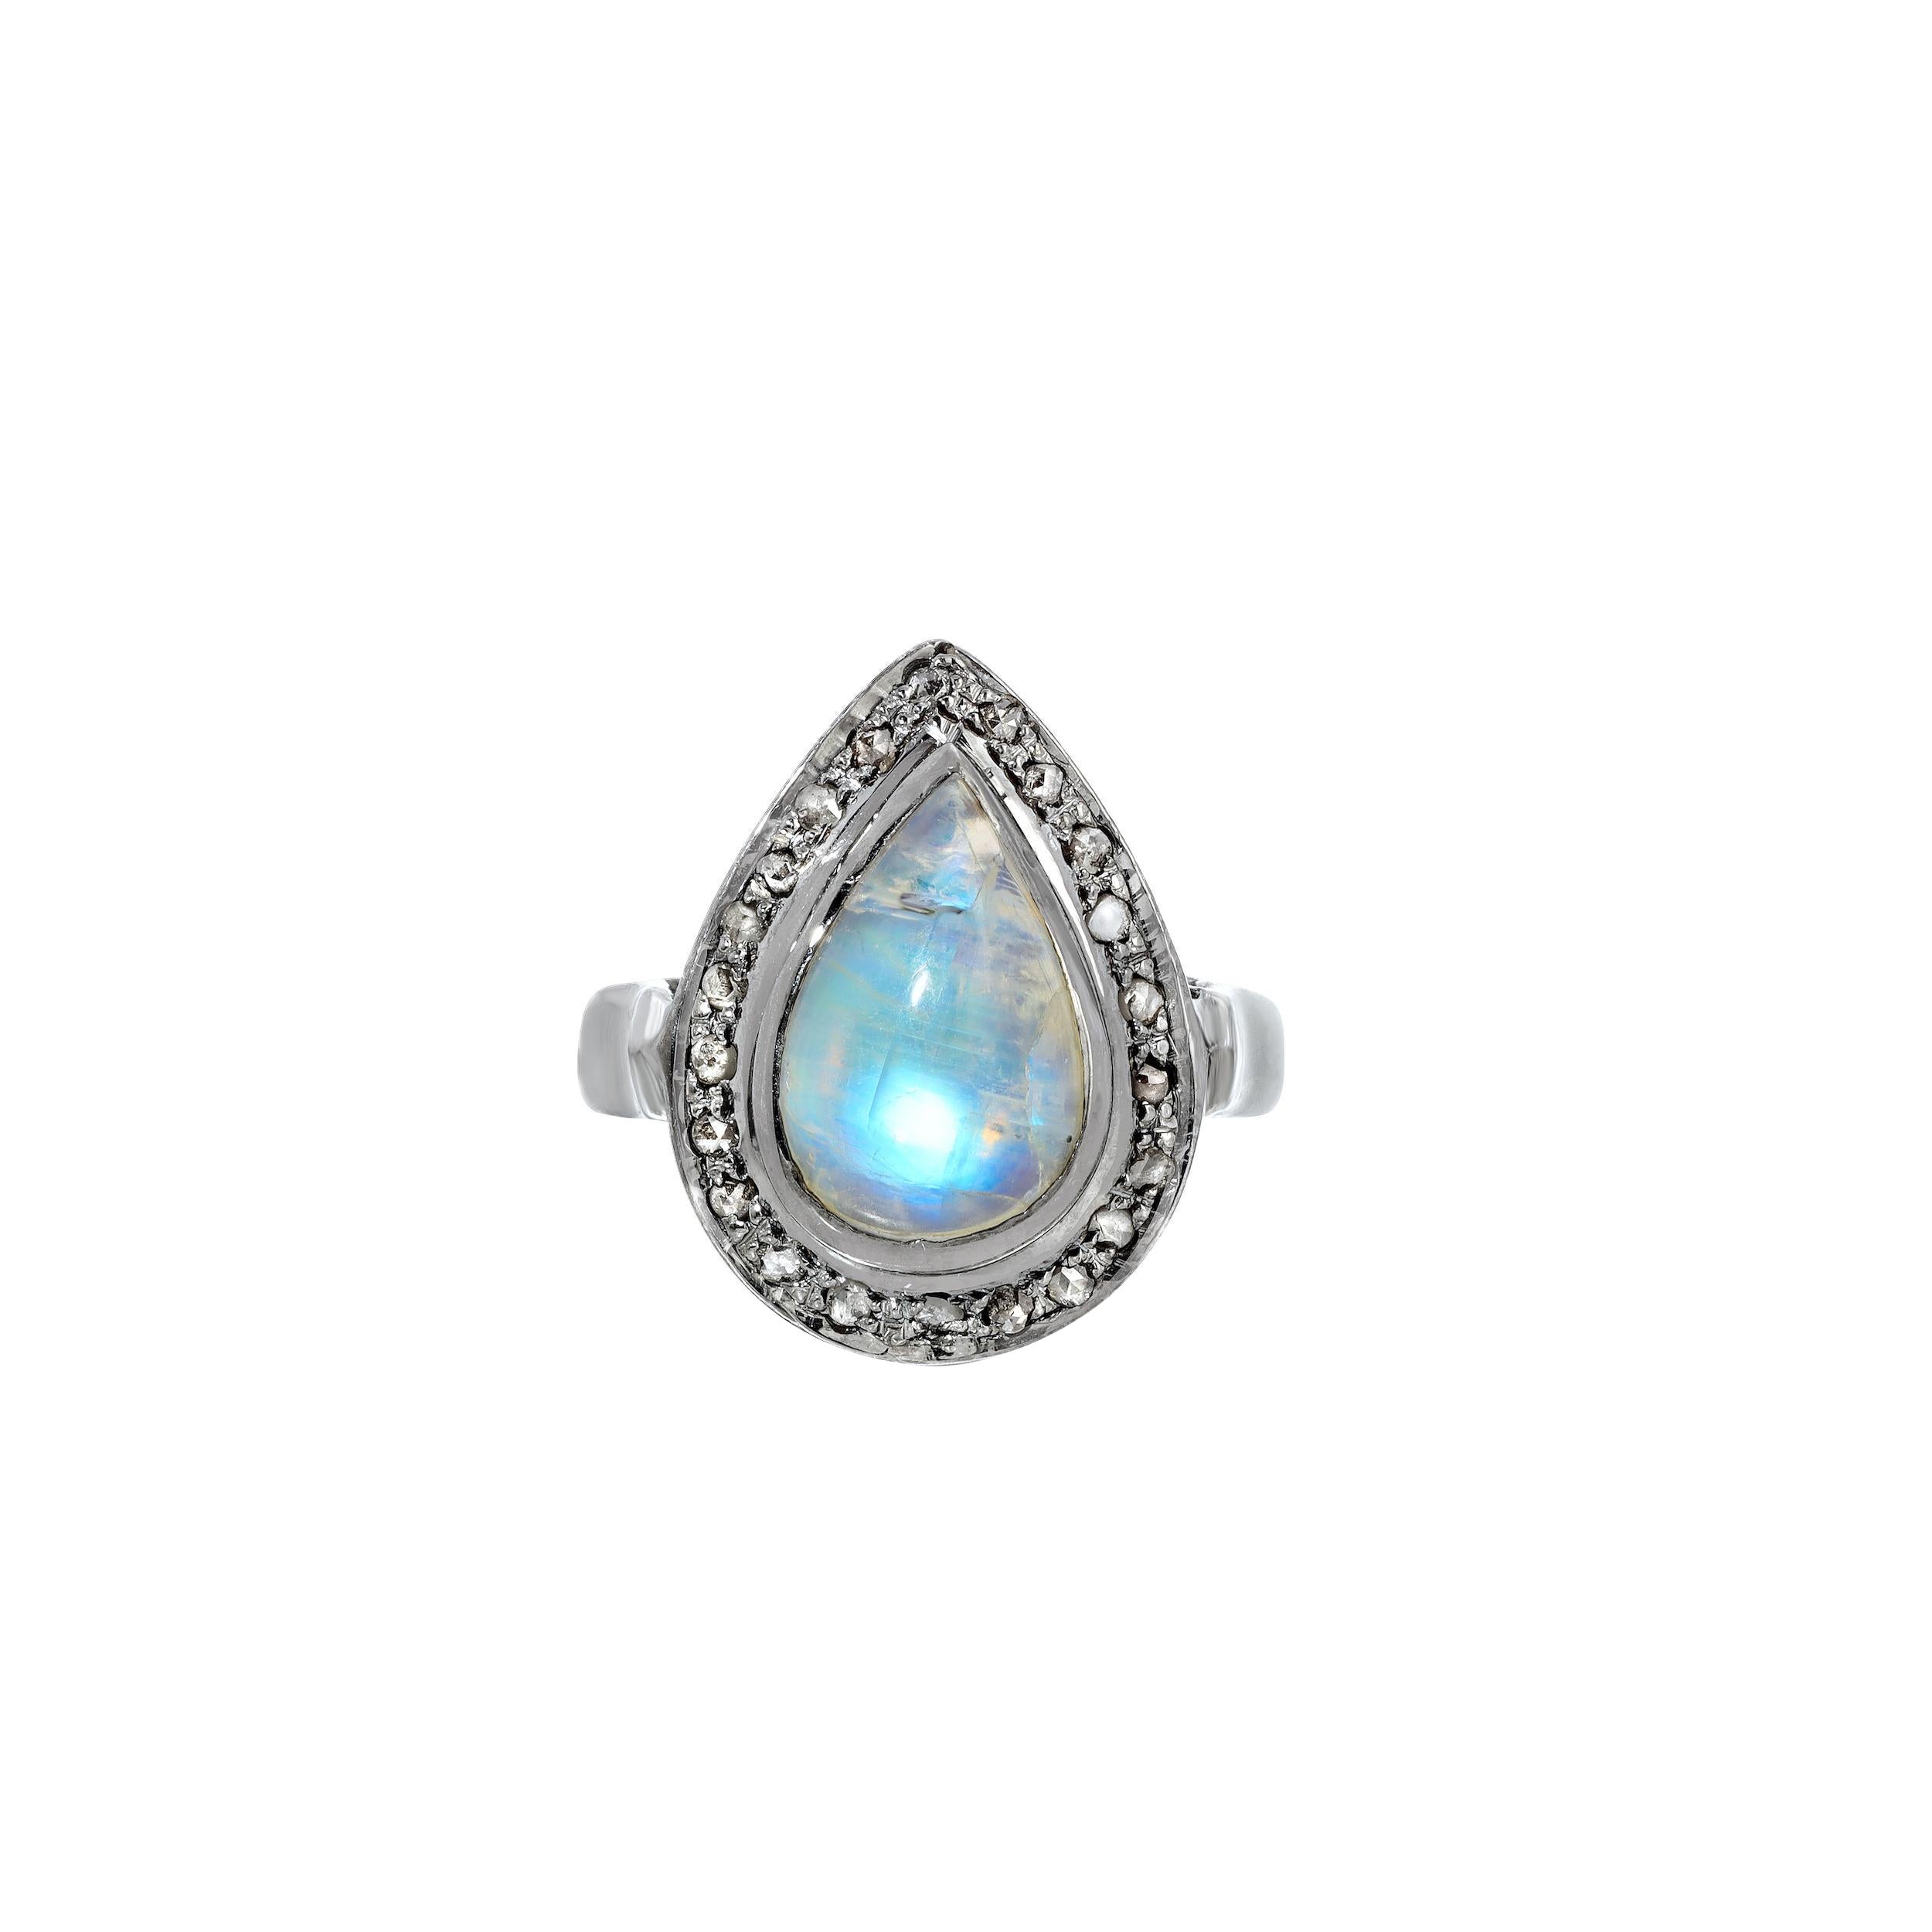 Blauer Mondstein Diamant Birne Statement-Ring